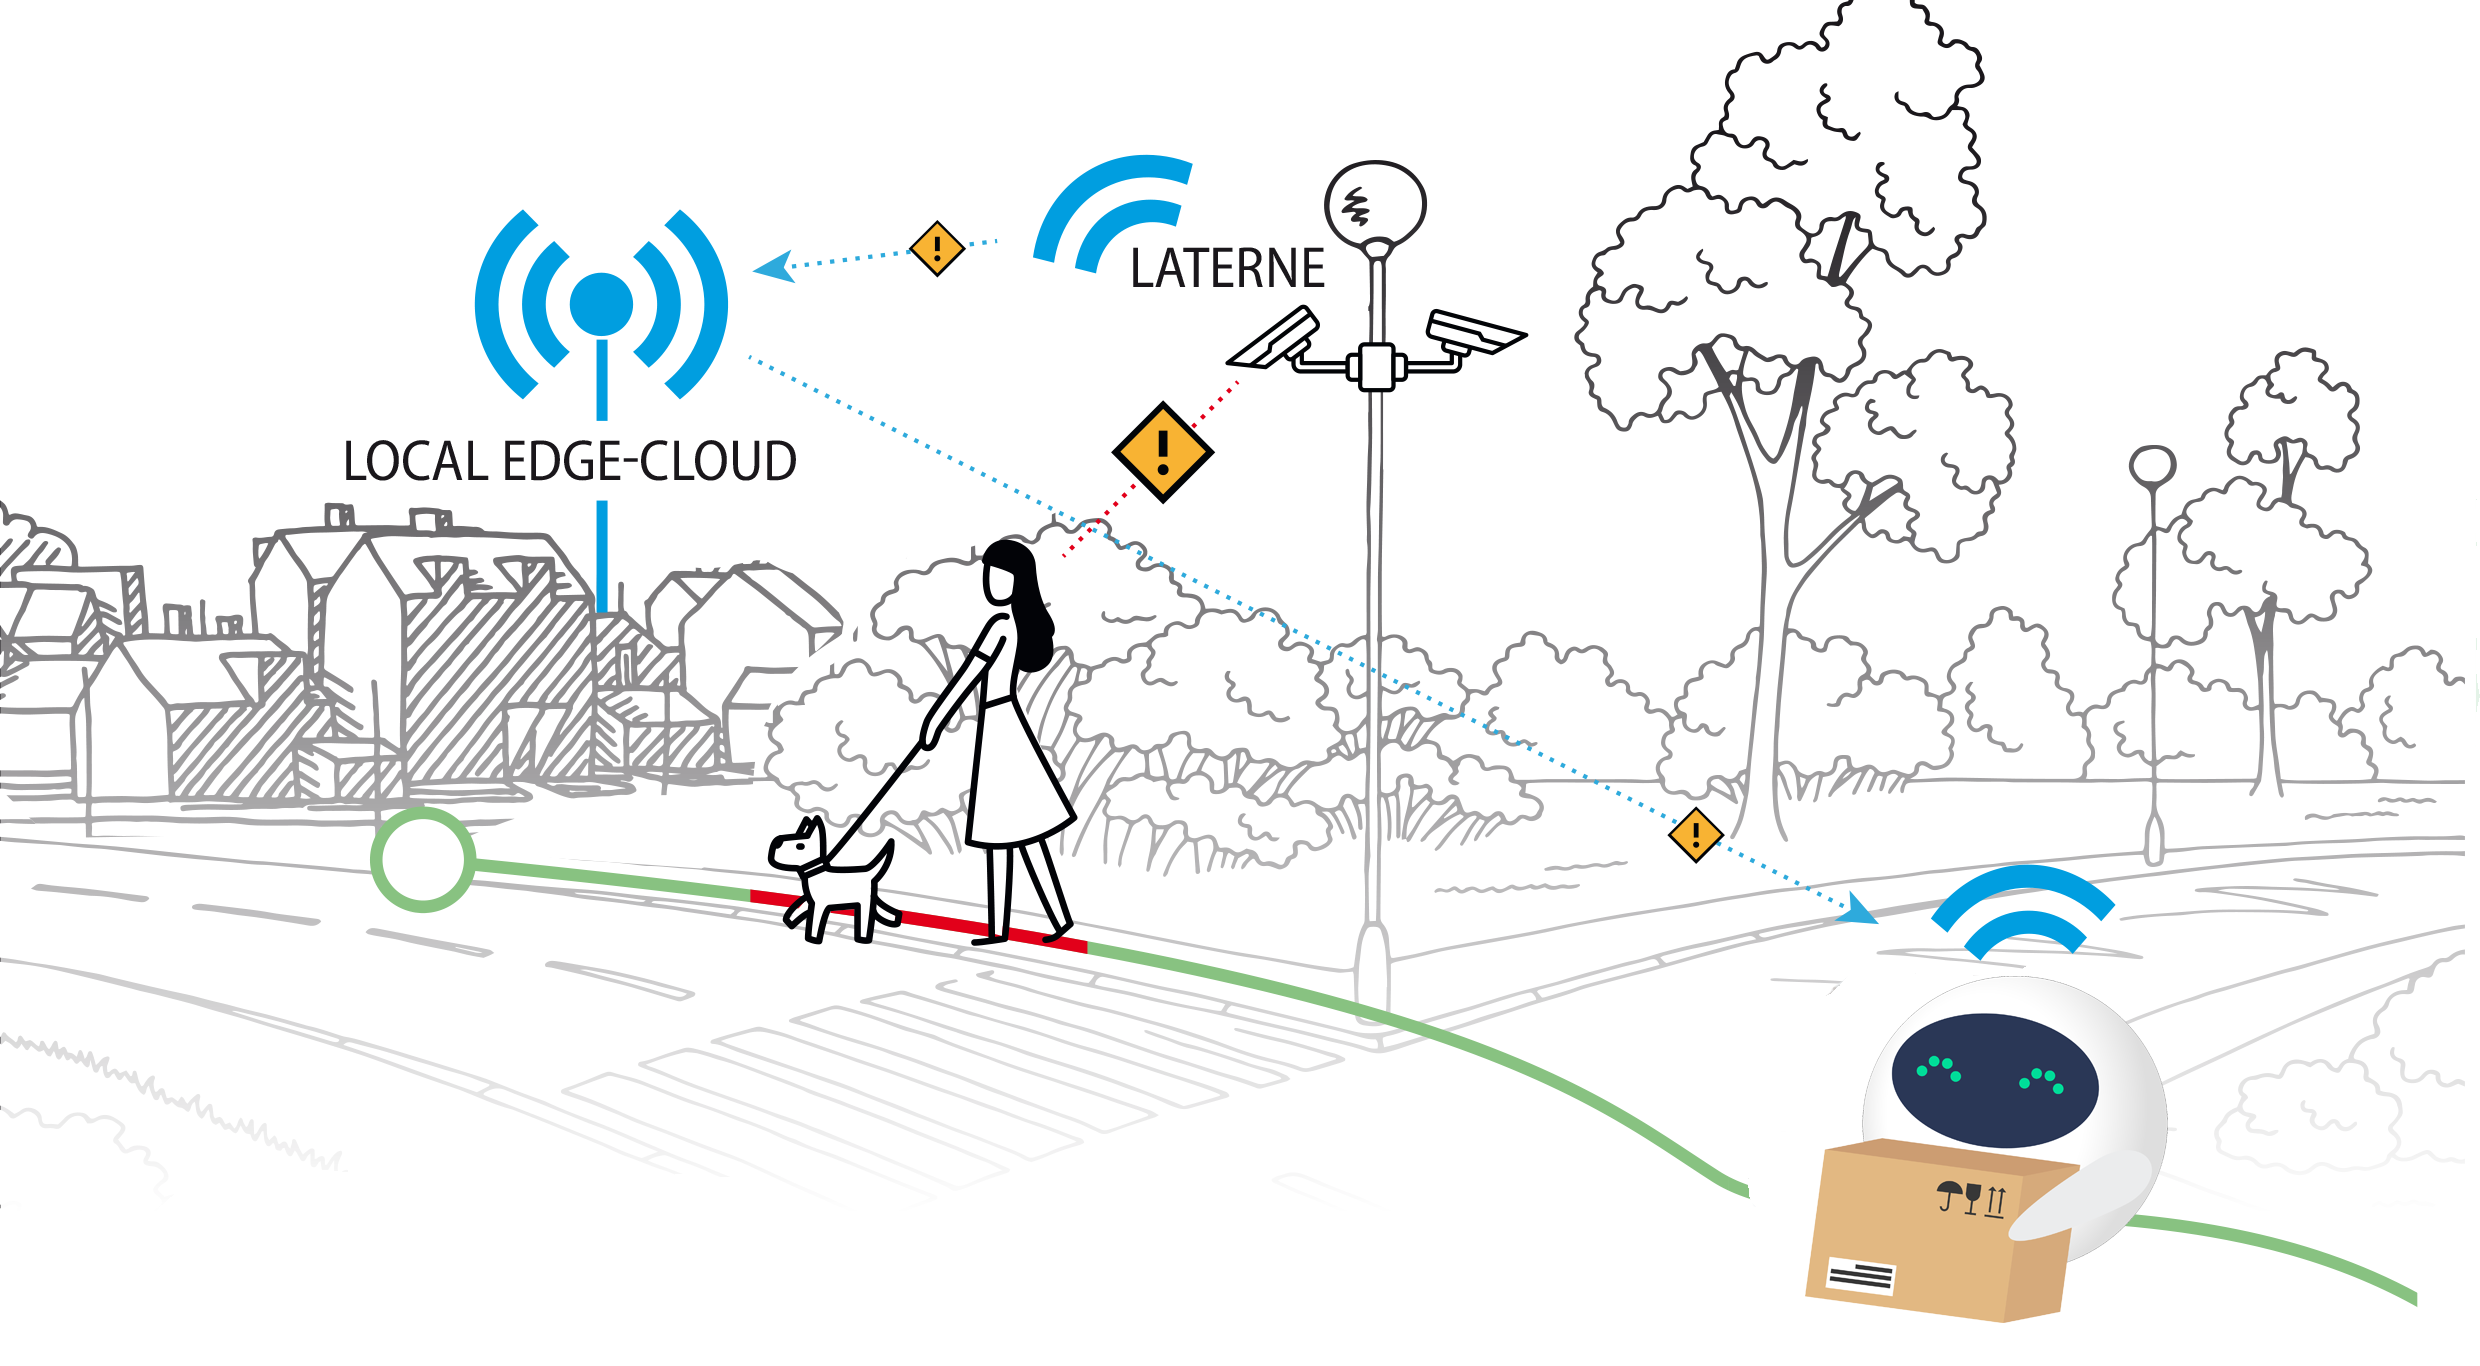 Zeichnung: Der neuartige technologische Ansatz ergibt sich aus den neuen Möglichkeiten eines 5G-Netzes. Dank einer leistungsfähigen Echtzeit-Datenverbindung wird ein großer Teil der rechenintensiven Aufgaben für die autonome Fahrfunktion und Straßenüberwachung zentralisiert in eine lokale Edge-Cloud verlegt.